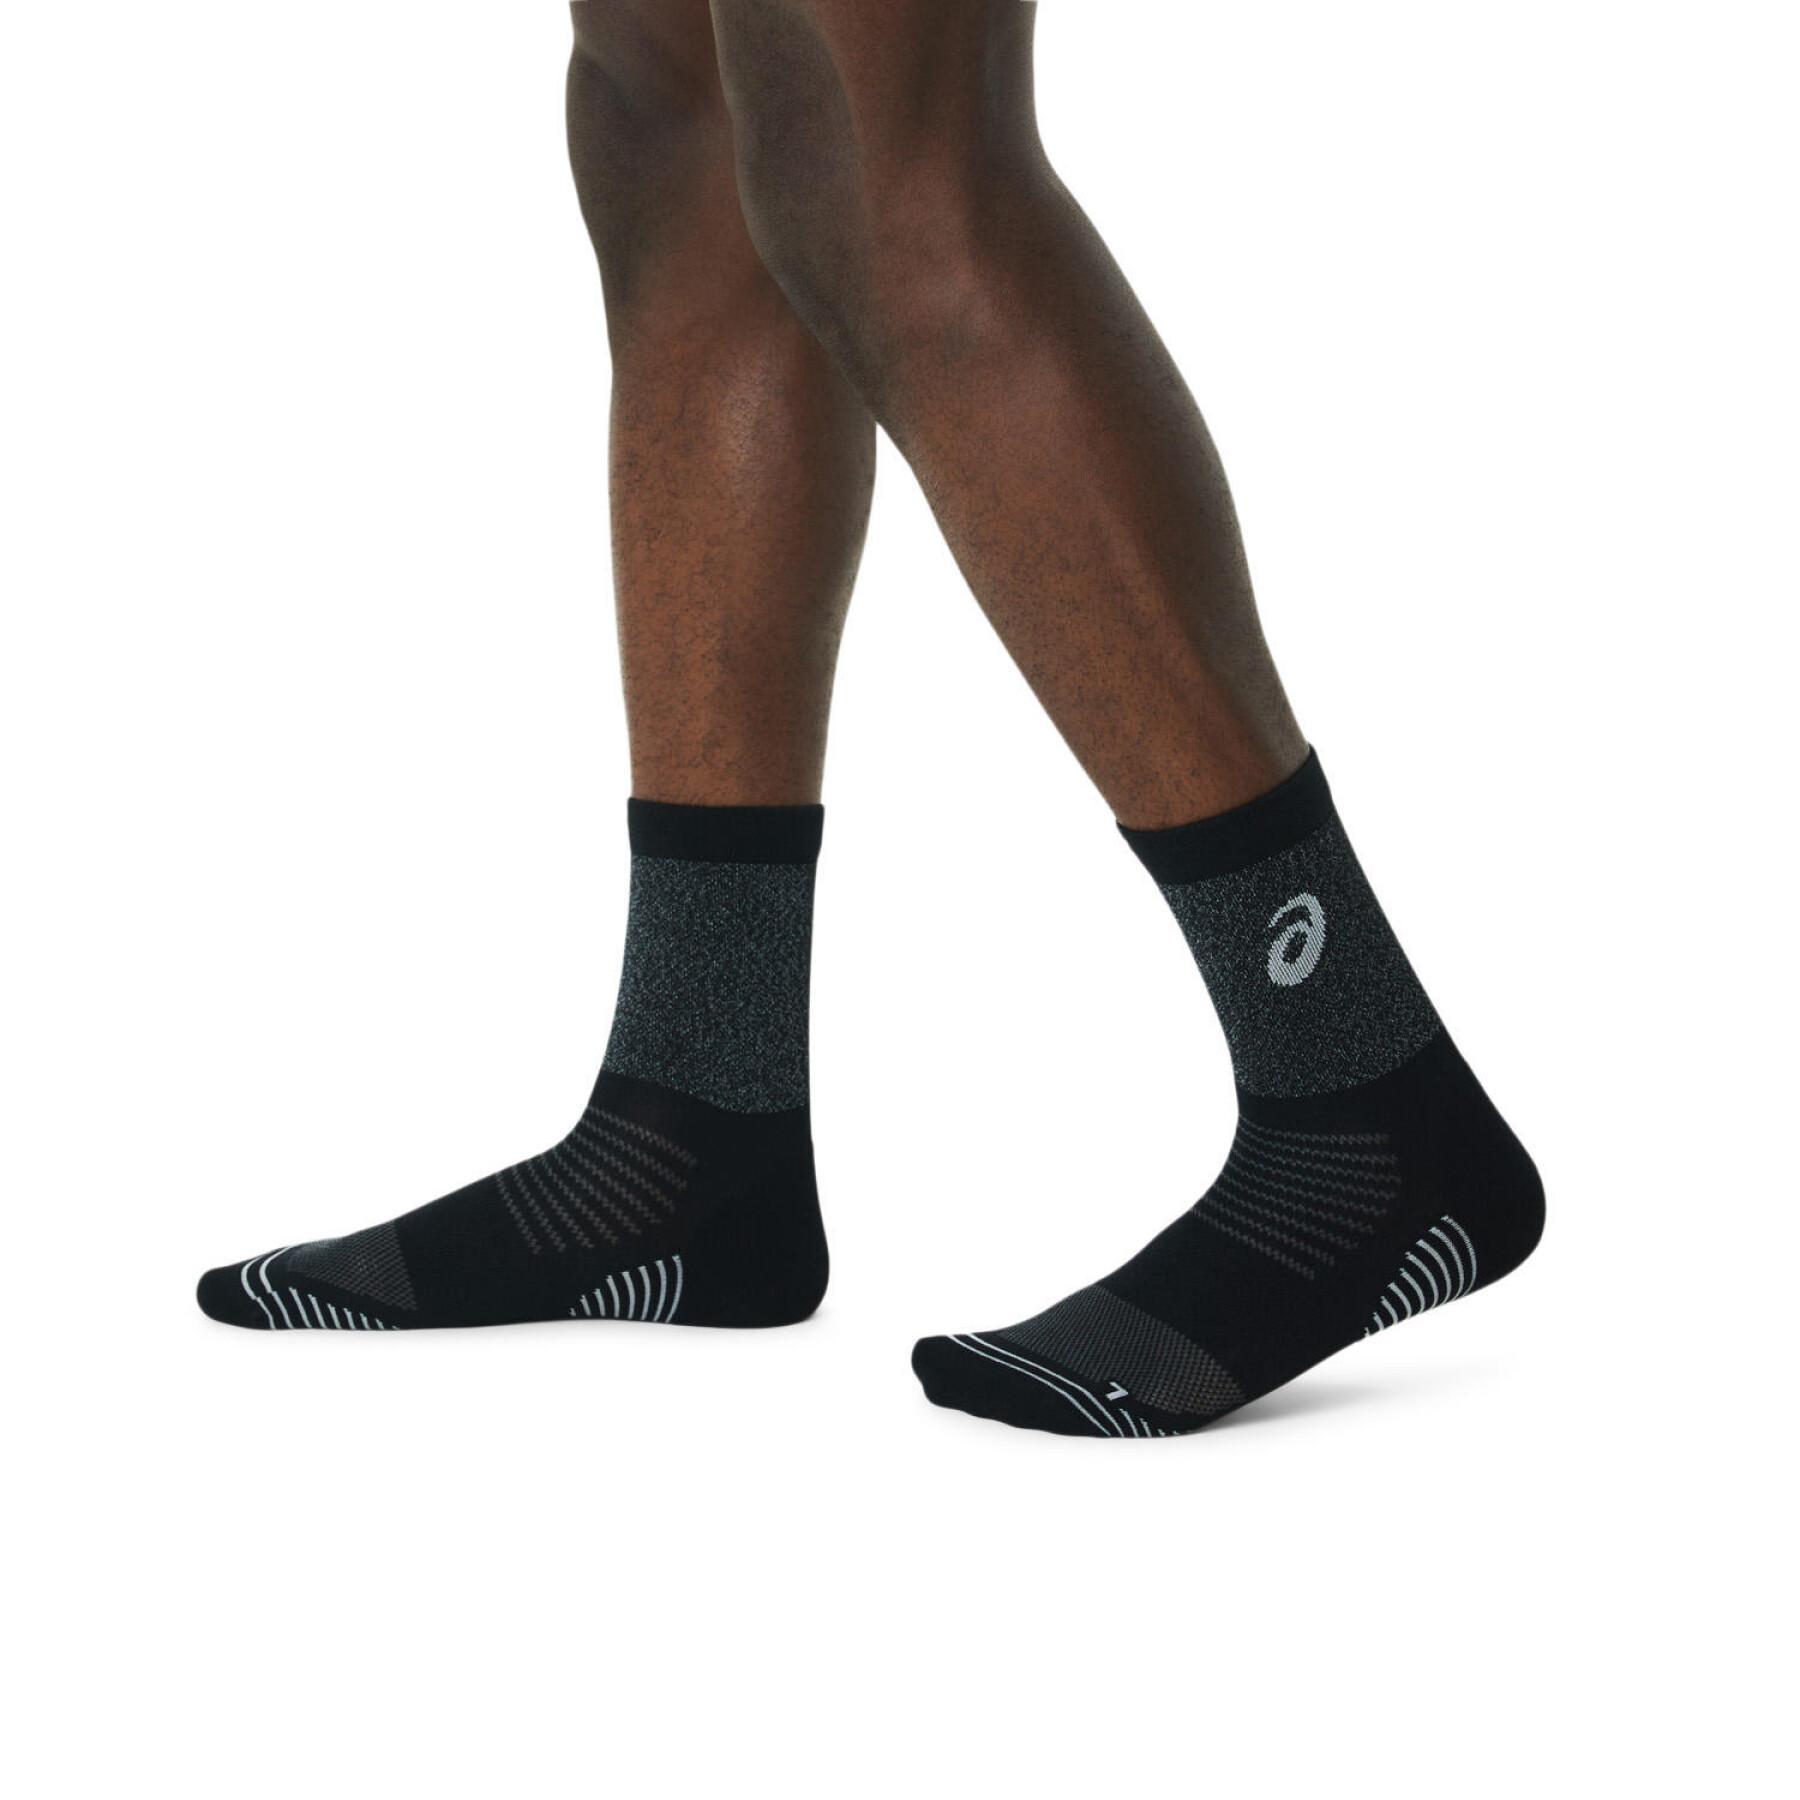  running mid-calf socks Asics Lite-Show